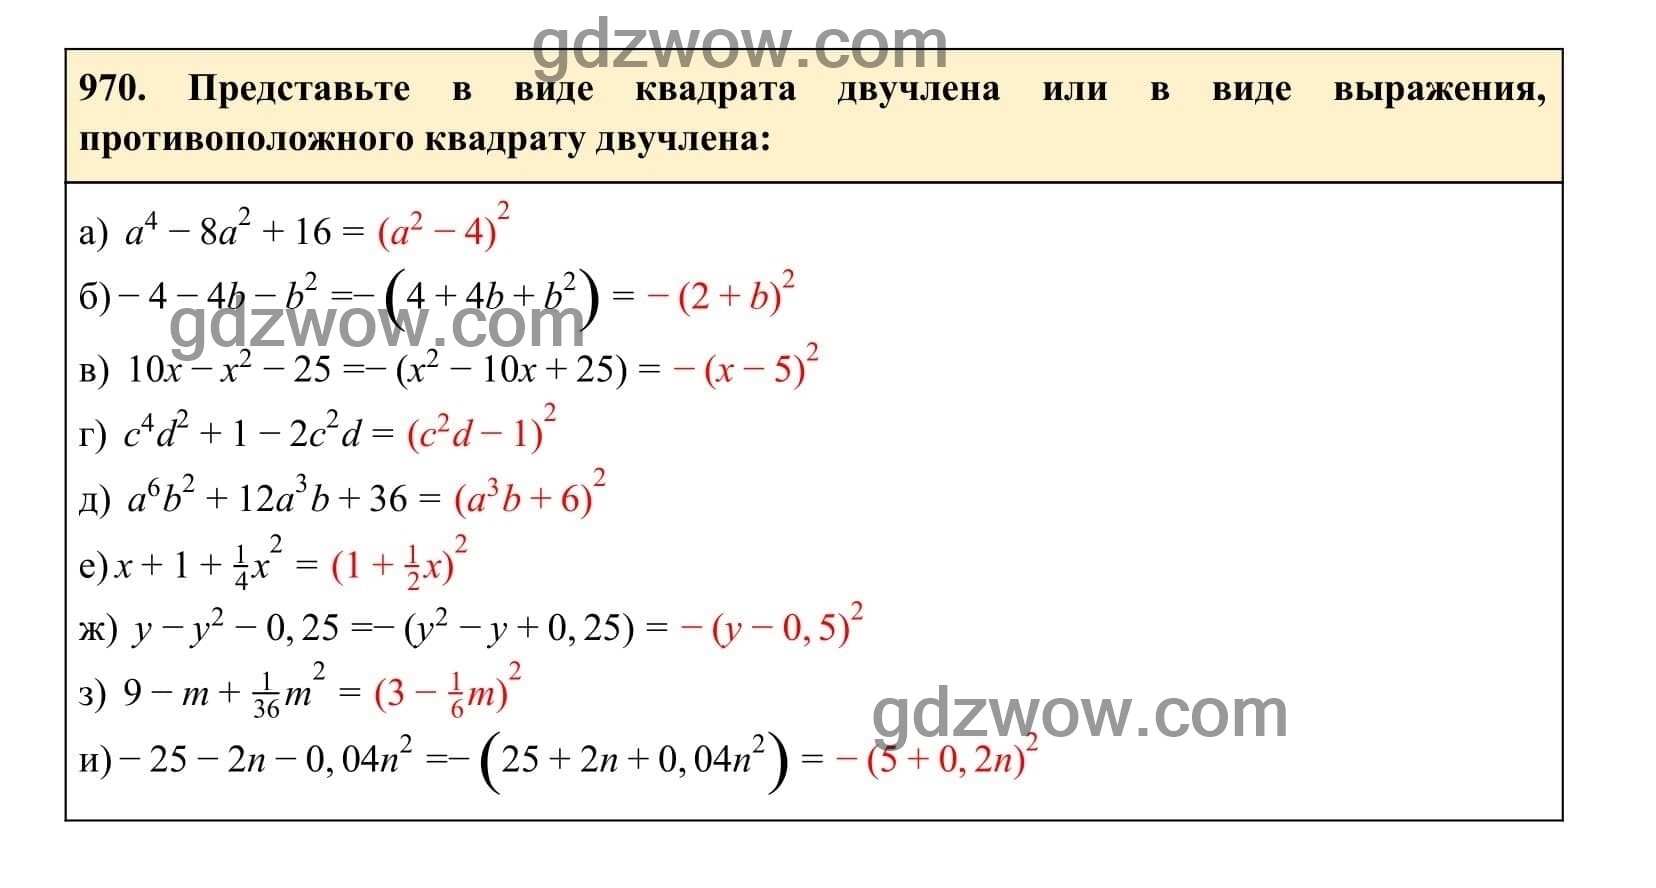 Упражнение 970 - ГДЗ по Алгебре 7 класс Учебник Макарычев (решебник) - GDZwow